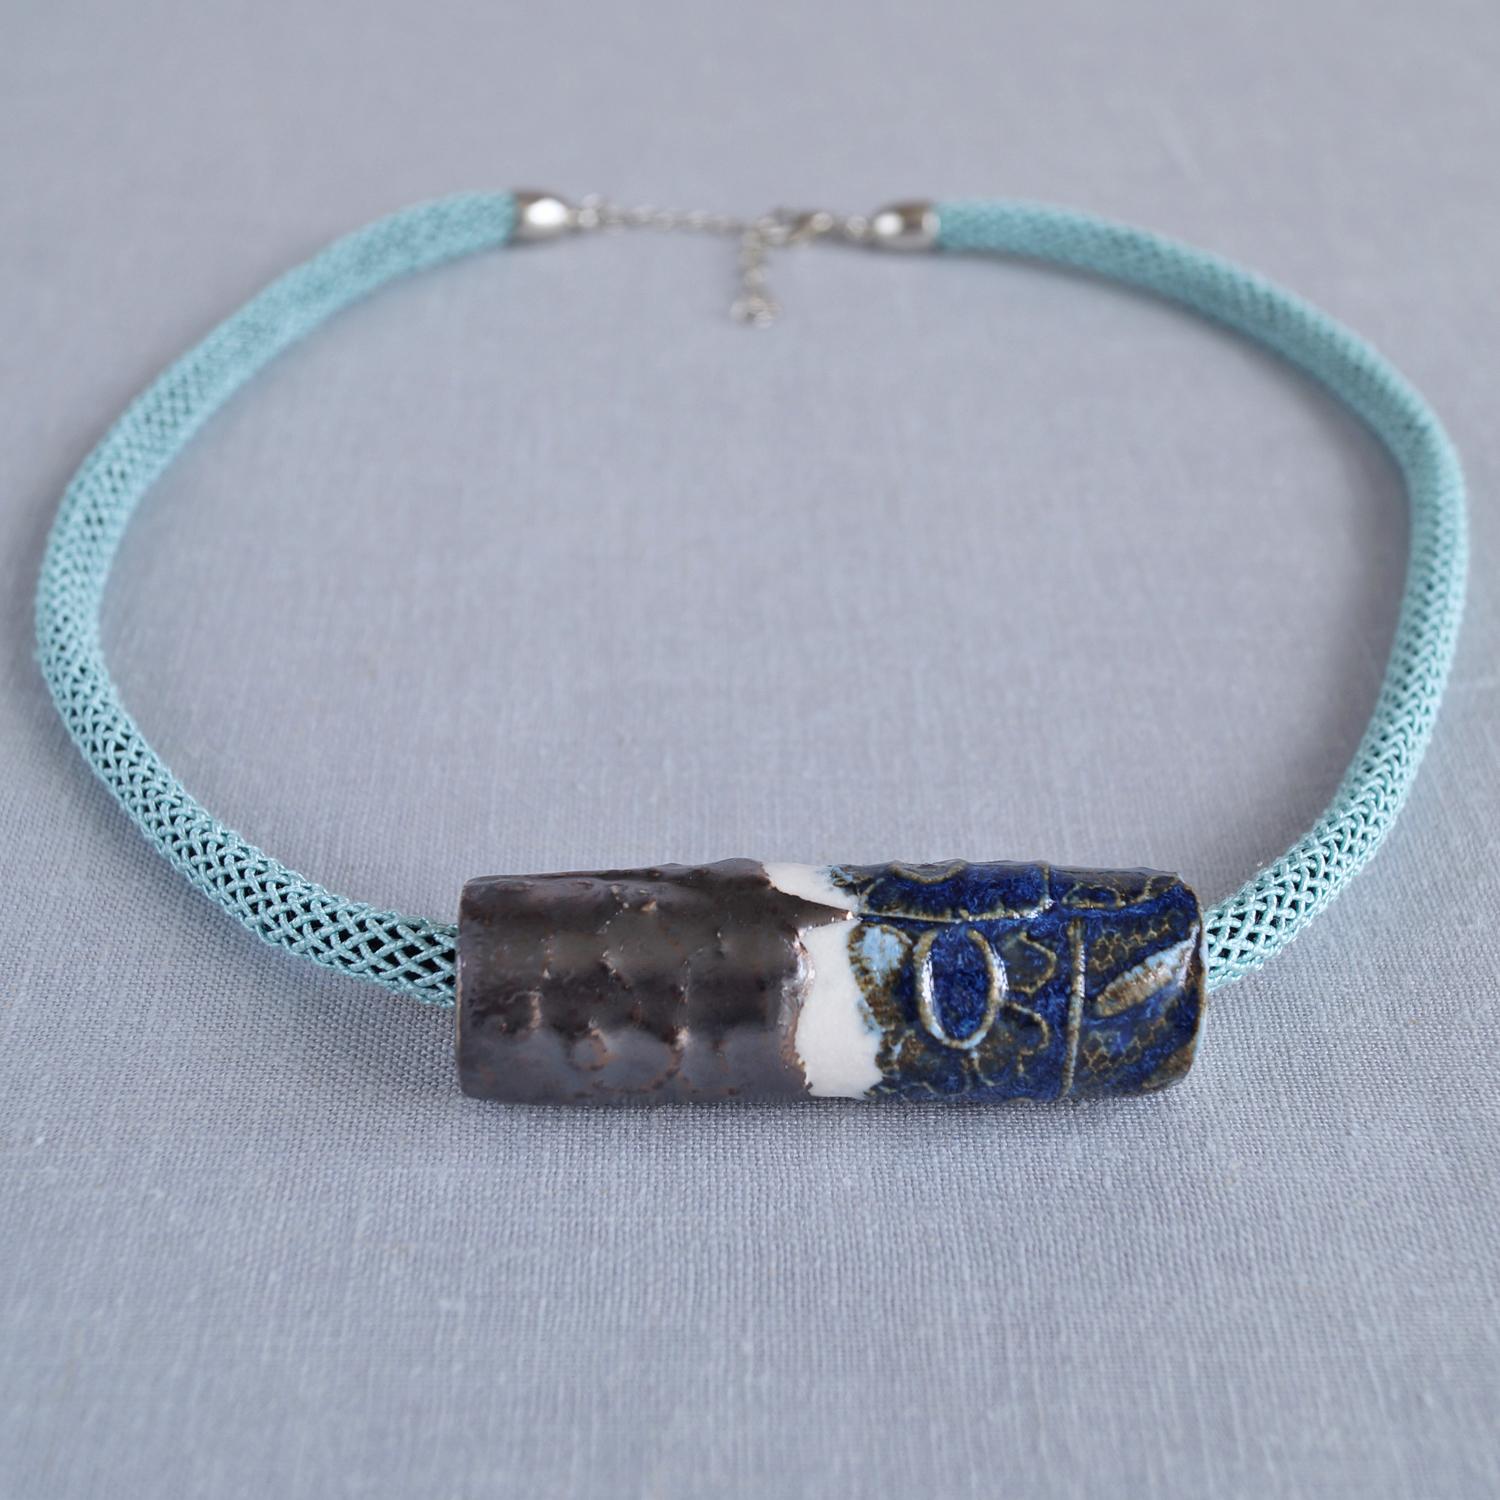 LACE focal bead necklace, porcelain, aqua silk braid